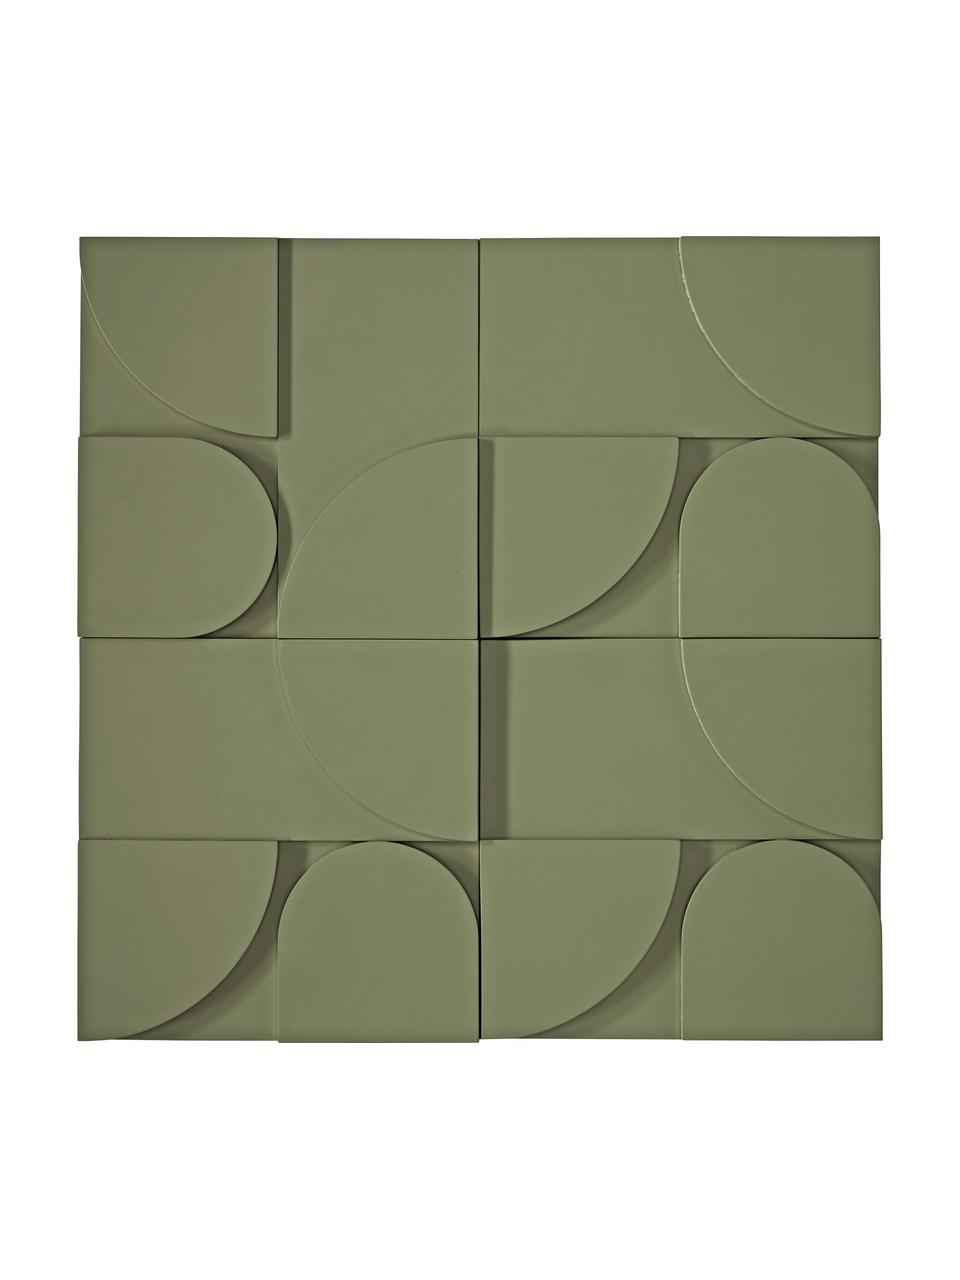 Wandobjekt-Set Massimo aus Holz in Grün, 4-tlg., Mitteldichte Holzfaserplatte (MDF), Grün, B 80 x H 80 cm